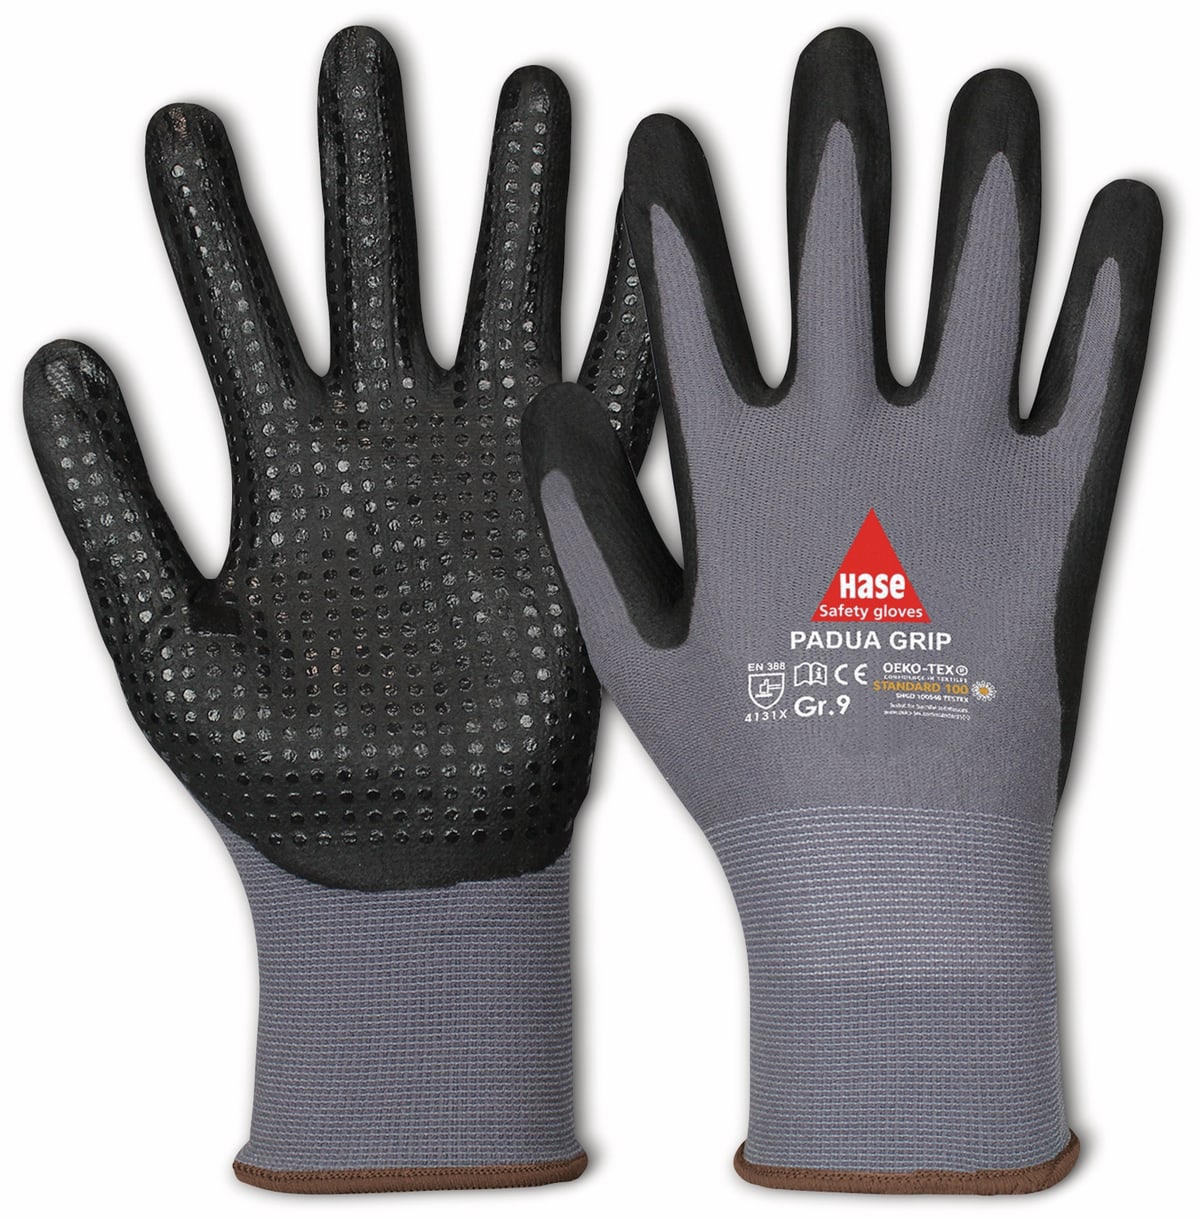 HASE SAFETY GLOVES Arbeitshandschuhe mit Noppen, Padua Grip, EN 388, EN 420, Größe 11, grau/schwarz von Hase Safety gloves